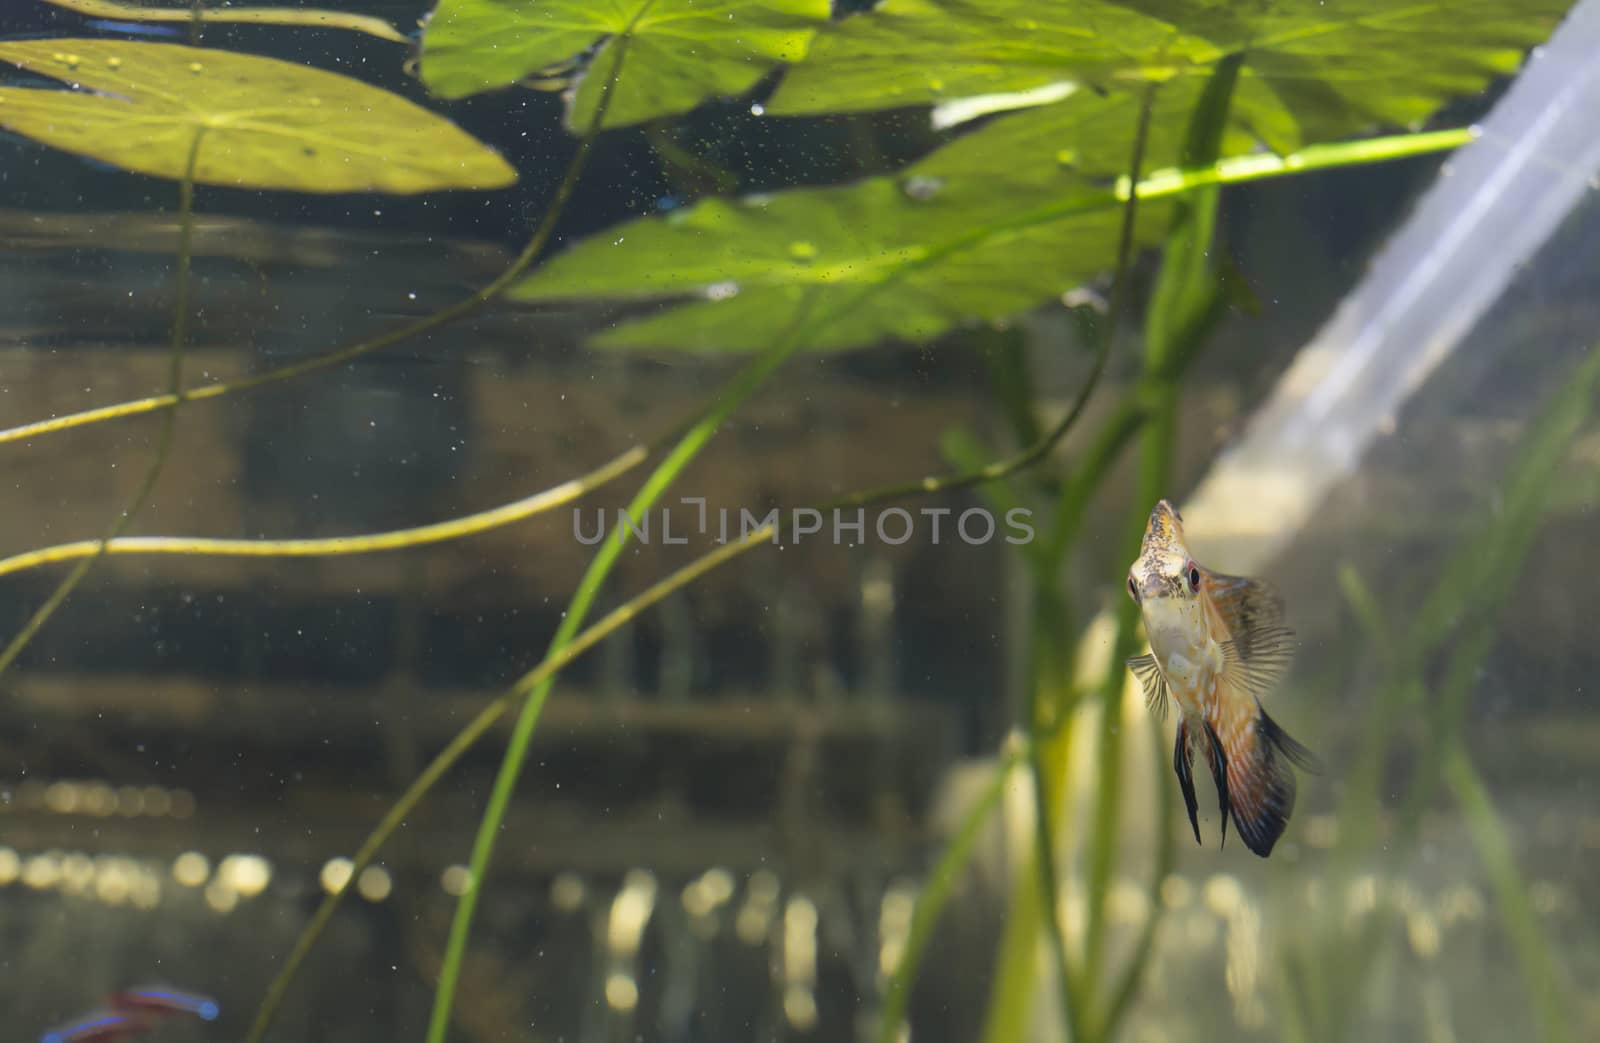 Orange pigeon blood discus fish (Symphysodon discus) in an aquarium